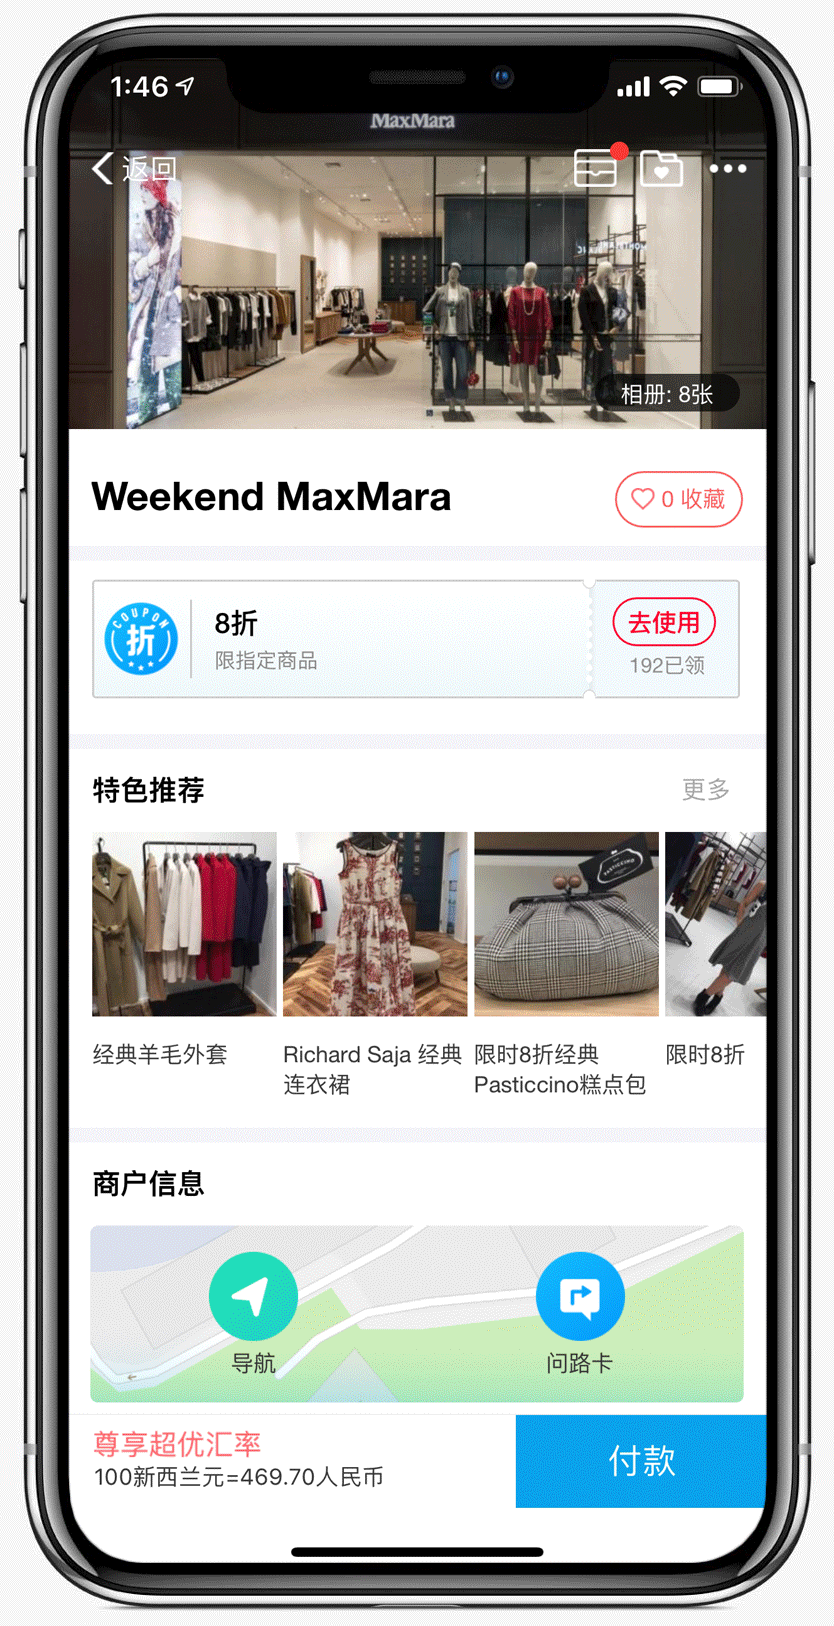 Weekend Max Mara on Alipay app